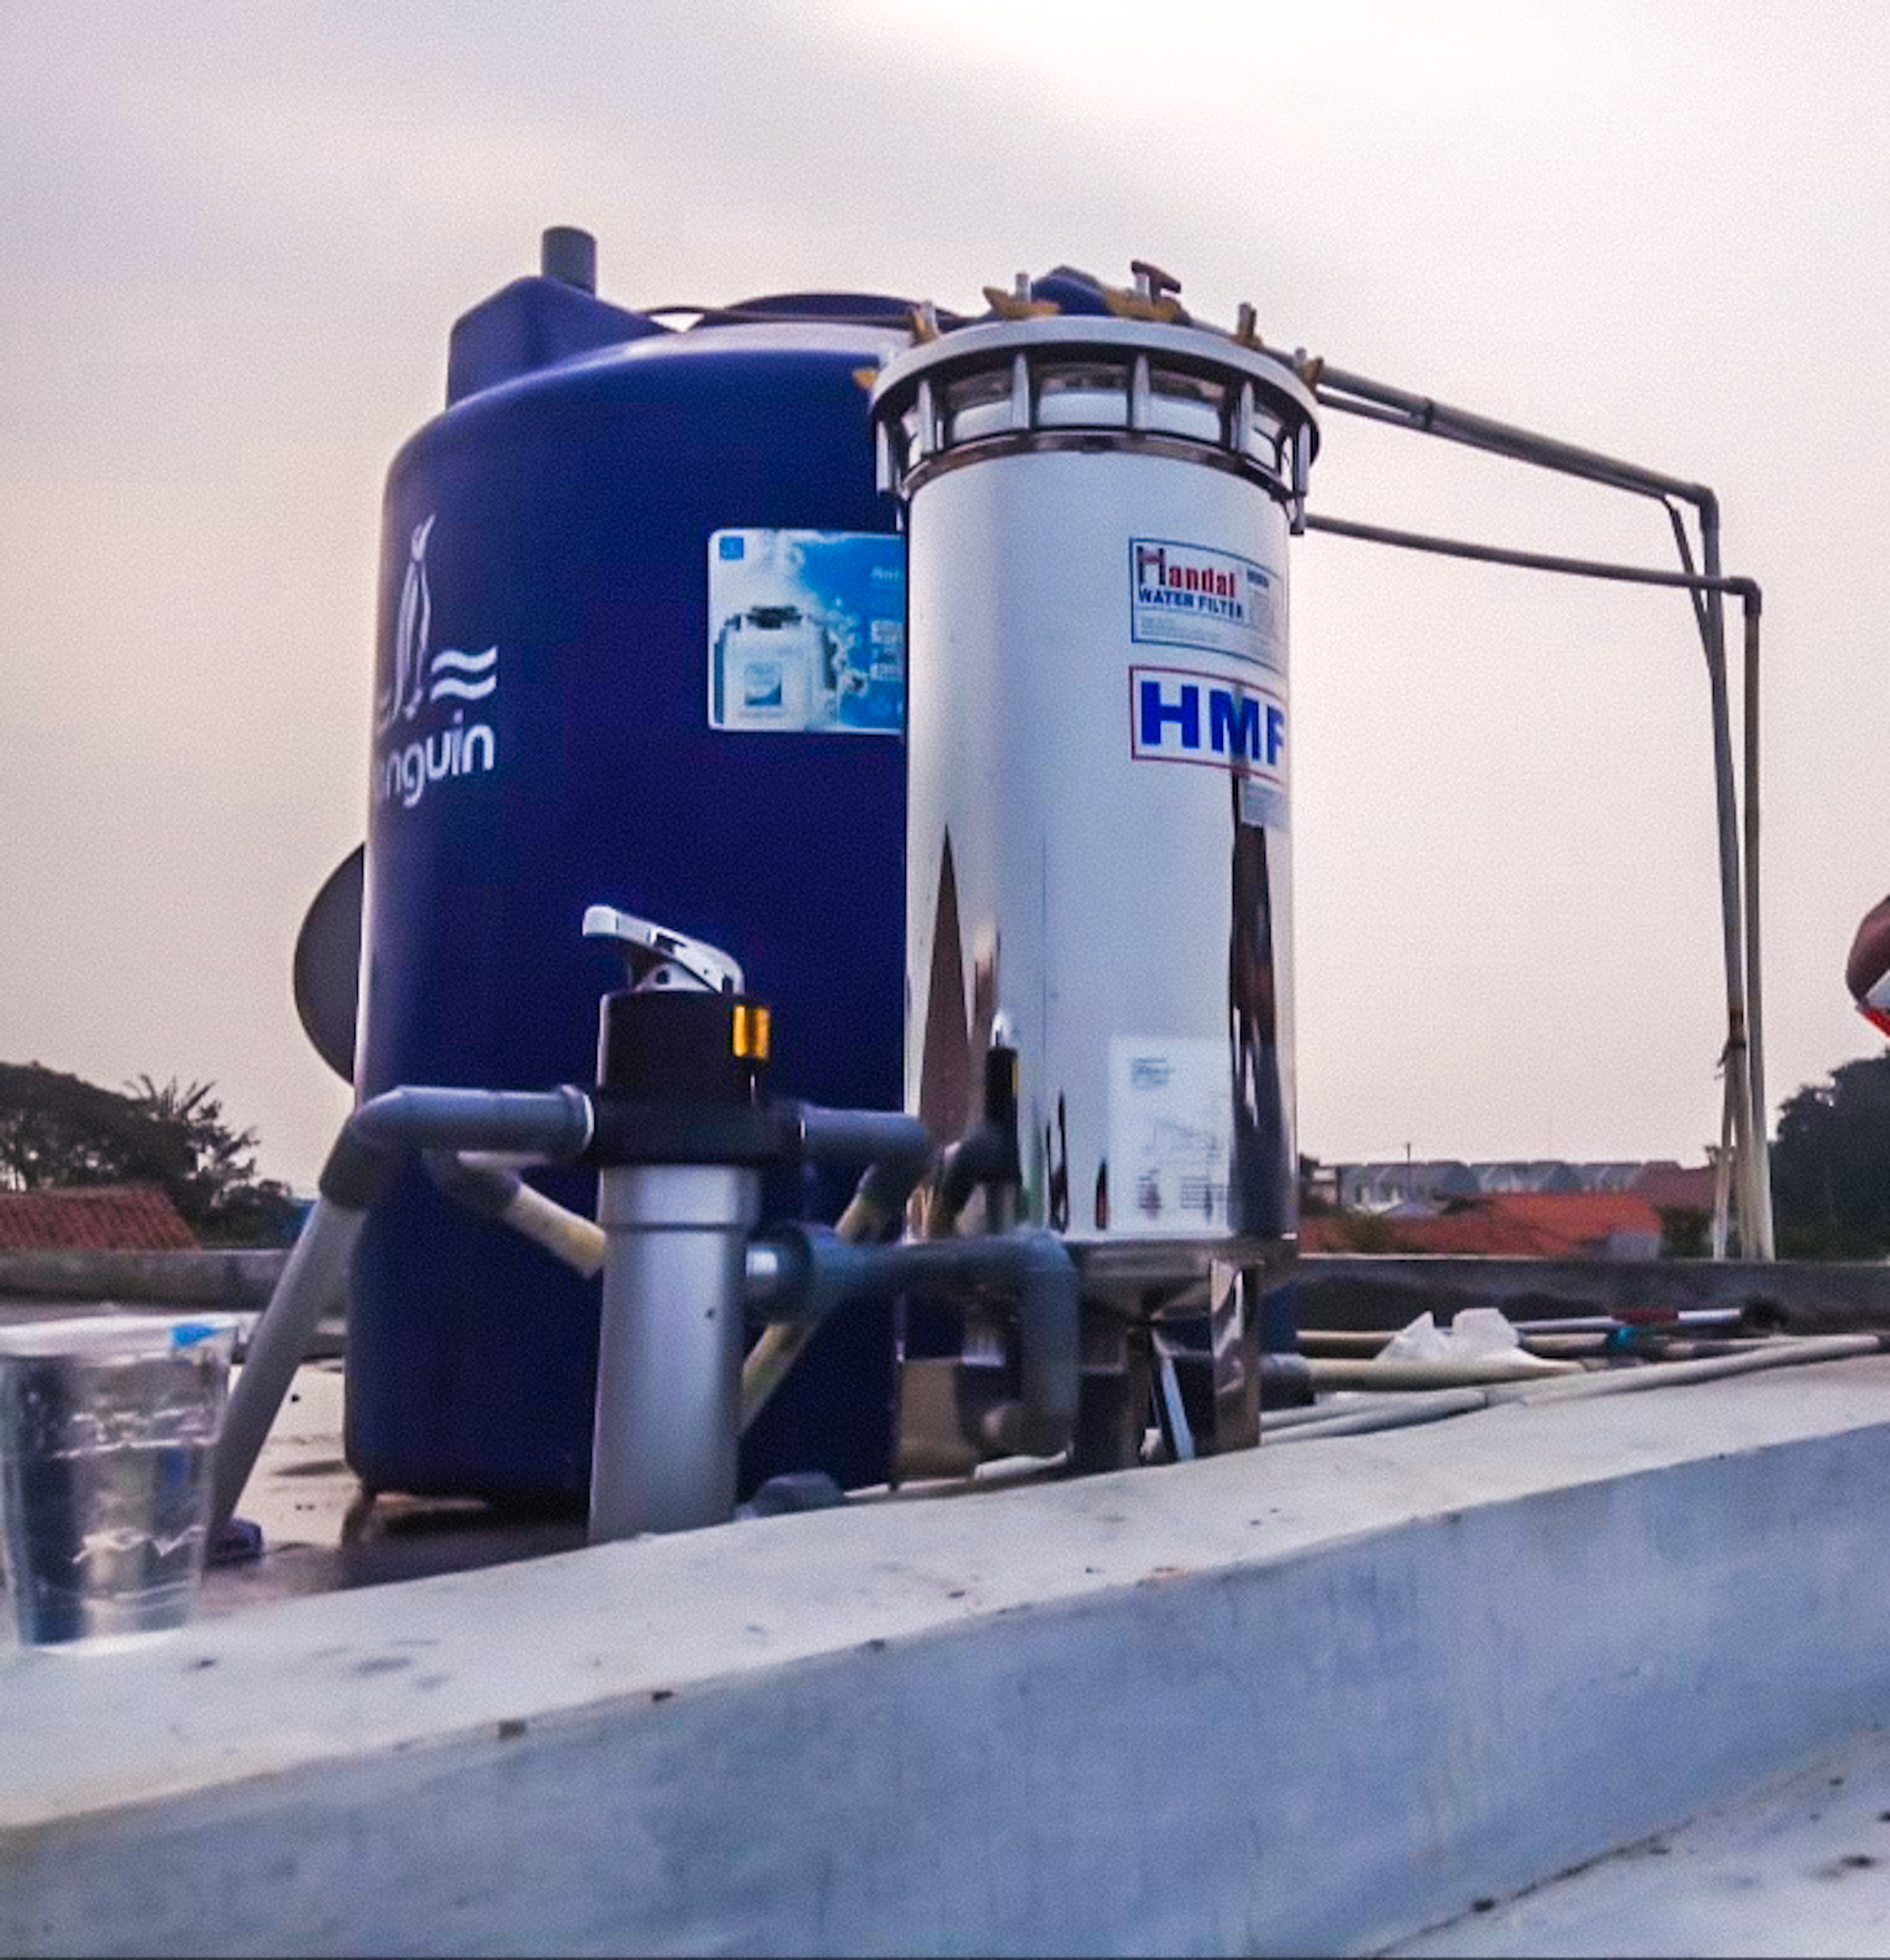 Filter Air Rumah Tangga by Handal